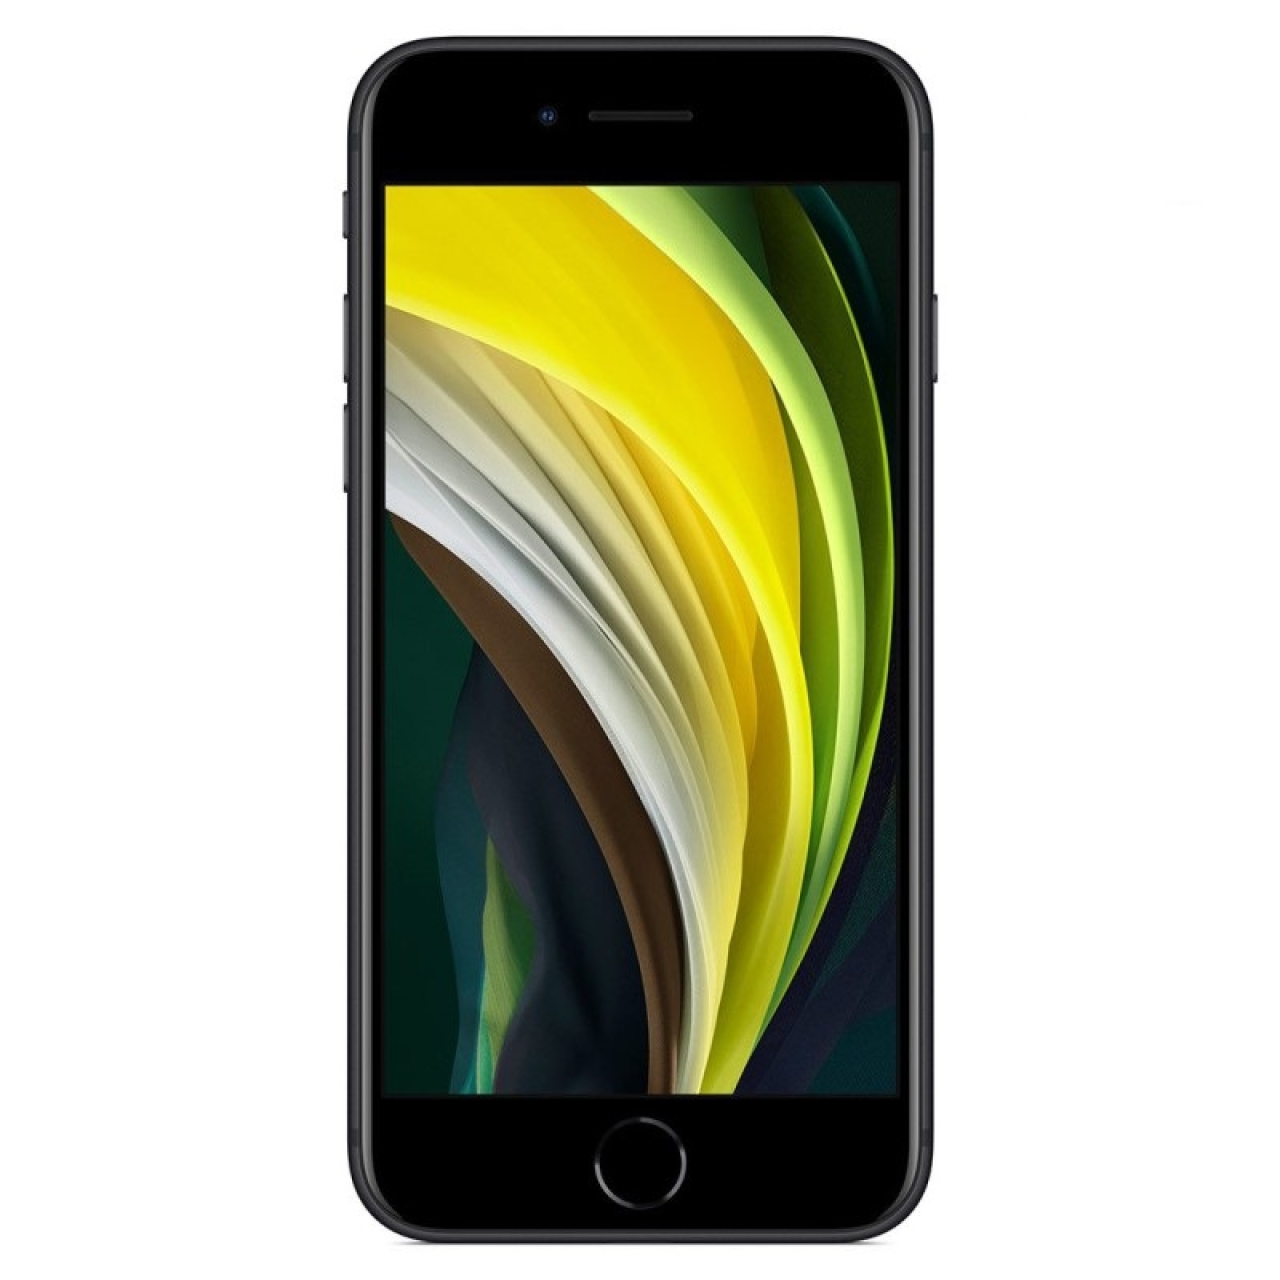 گوشی اپل iPhone SE 2020 TU/A-Not active با ظرفیت 256GB تک سیم کارت  BIG BOX